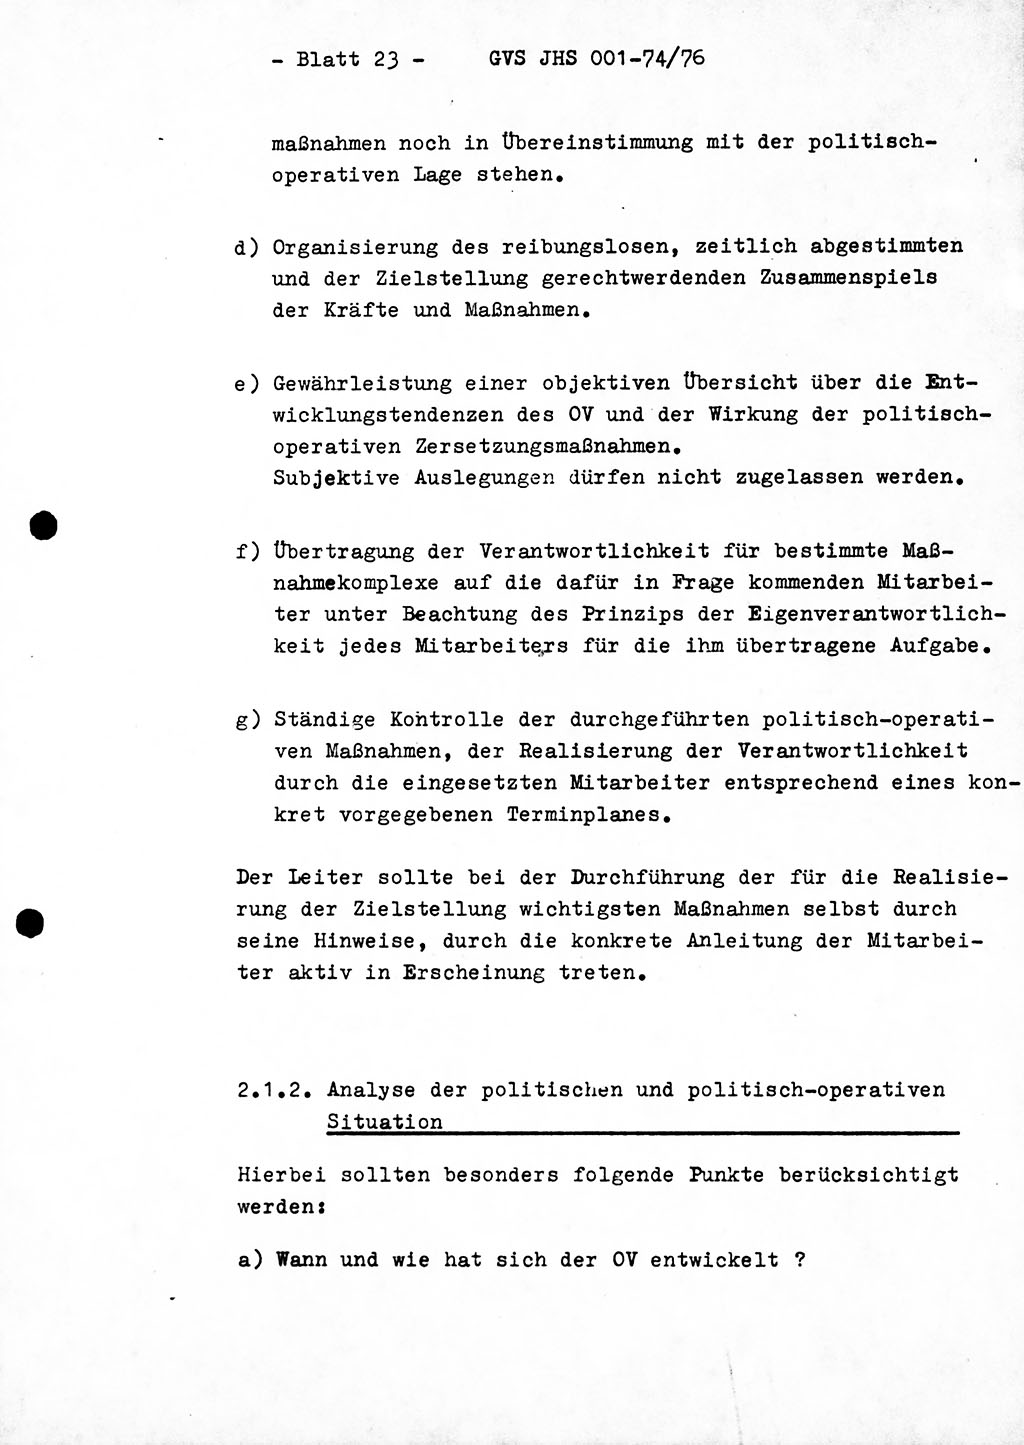 Diplomarbeit Hauptmann Joachim Tischendorf (HA ⅩⅩ), Ministerium für Staatssicherheit (MfS) der Deutschen Demokratischen Republik (DDR), Juristische Hochschule (JHS), Geheime Verschlußsache (GVS) 001-74/76, Potsdam 1976, Seite 23 (Dipl.-Arb. MfS DDR JHS GVS 001-74/76 1976, S. 23)